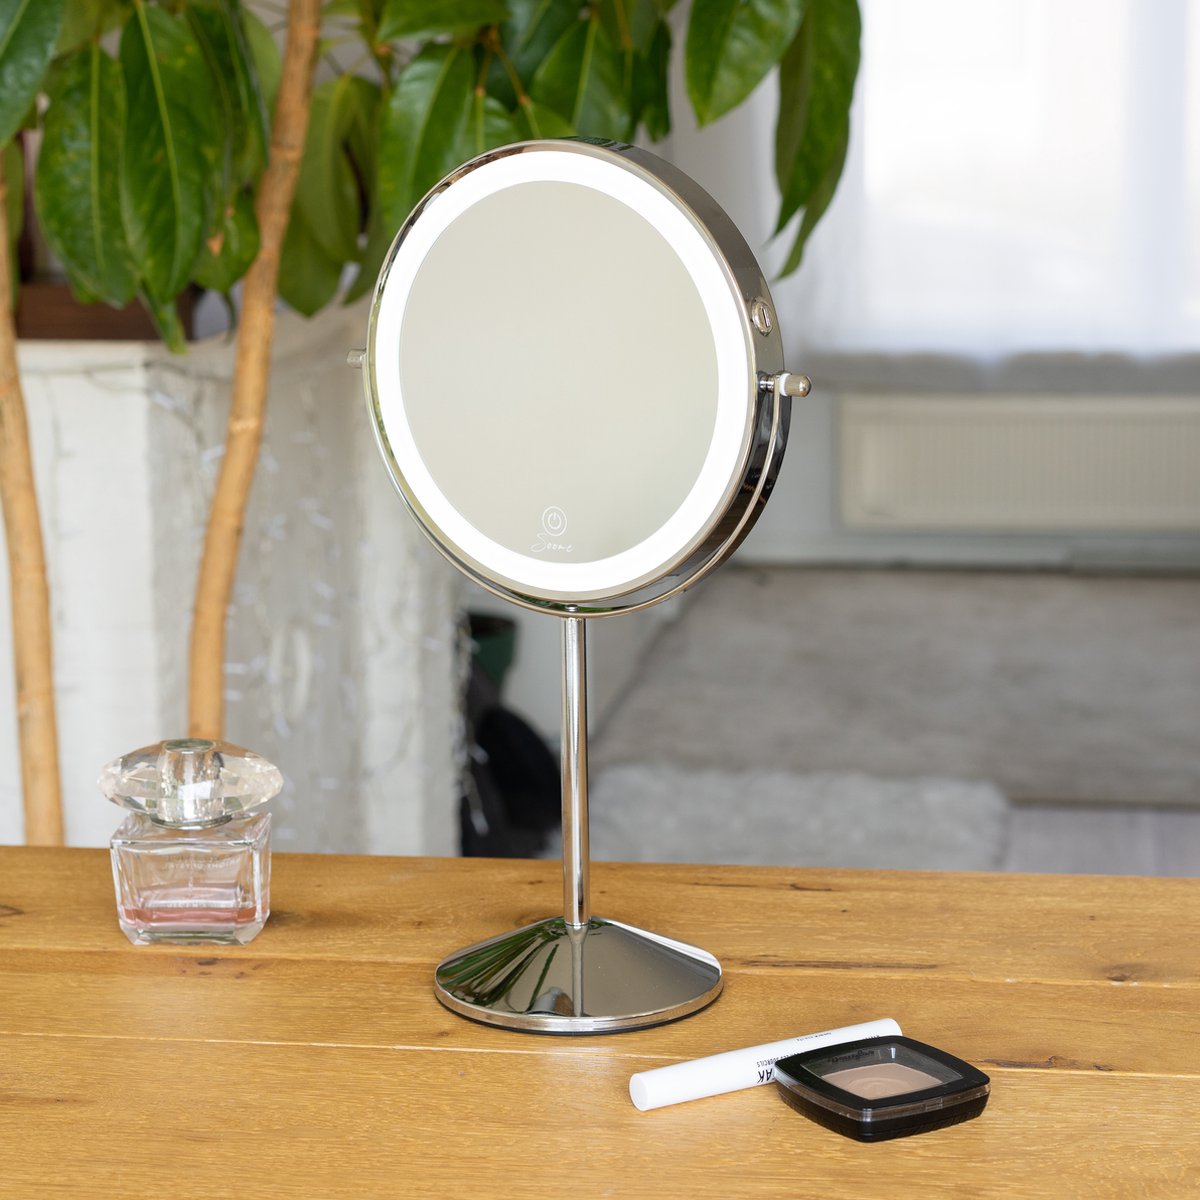 Soome Valo Make-up-LED-Spiegel – 10-fache Vergrößerung